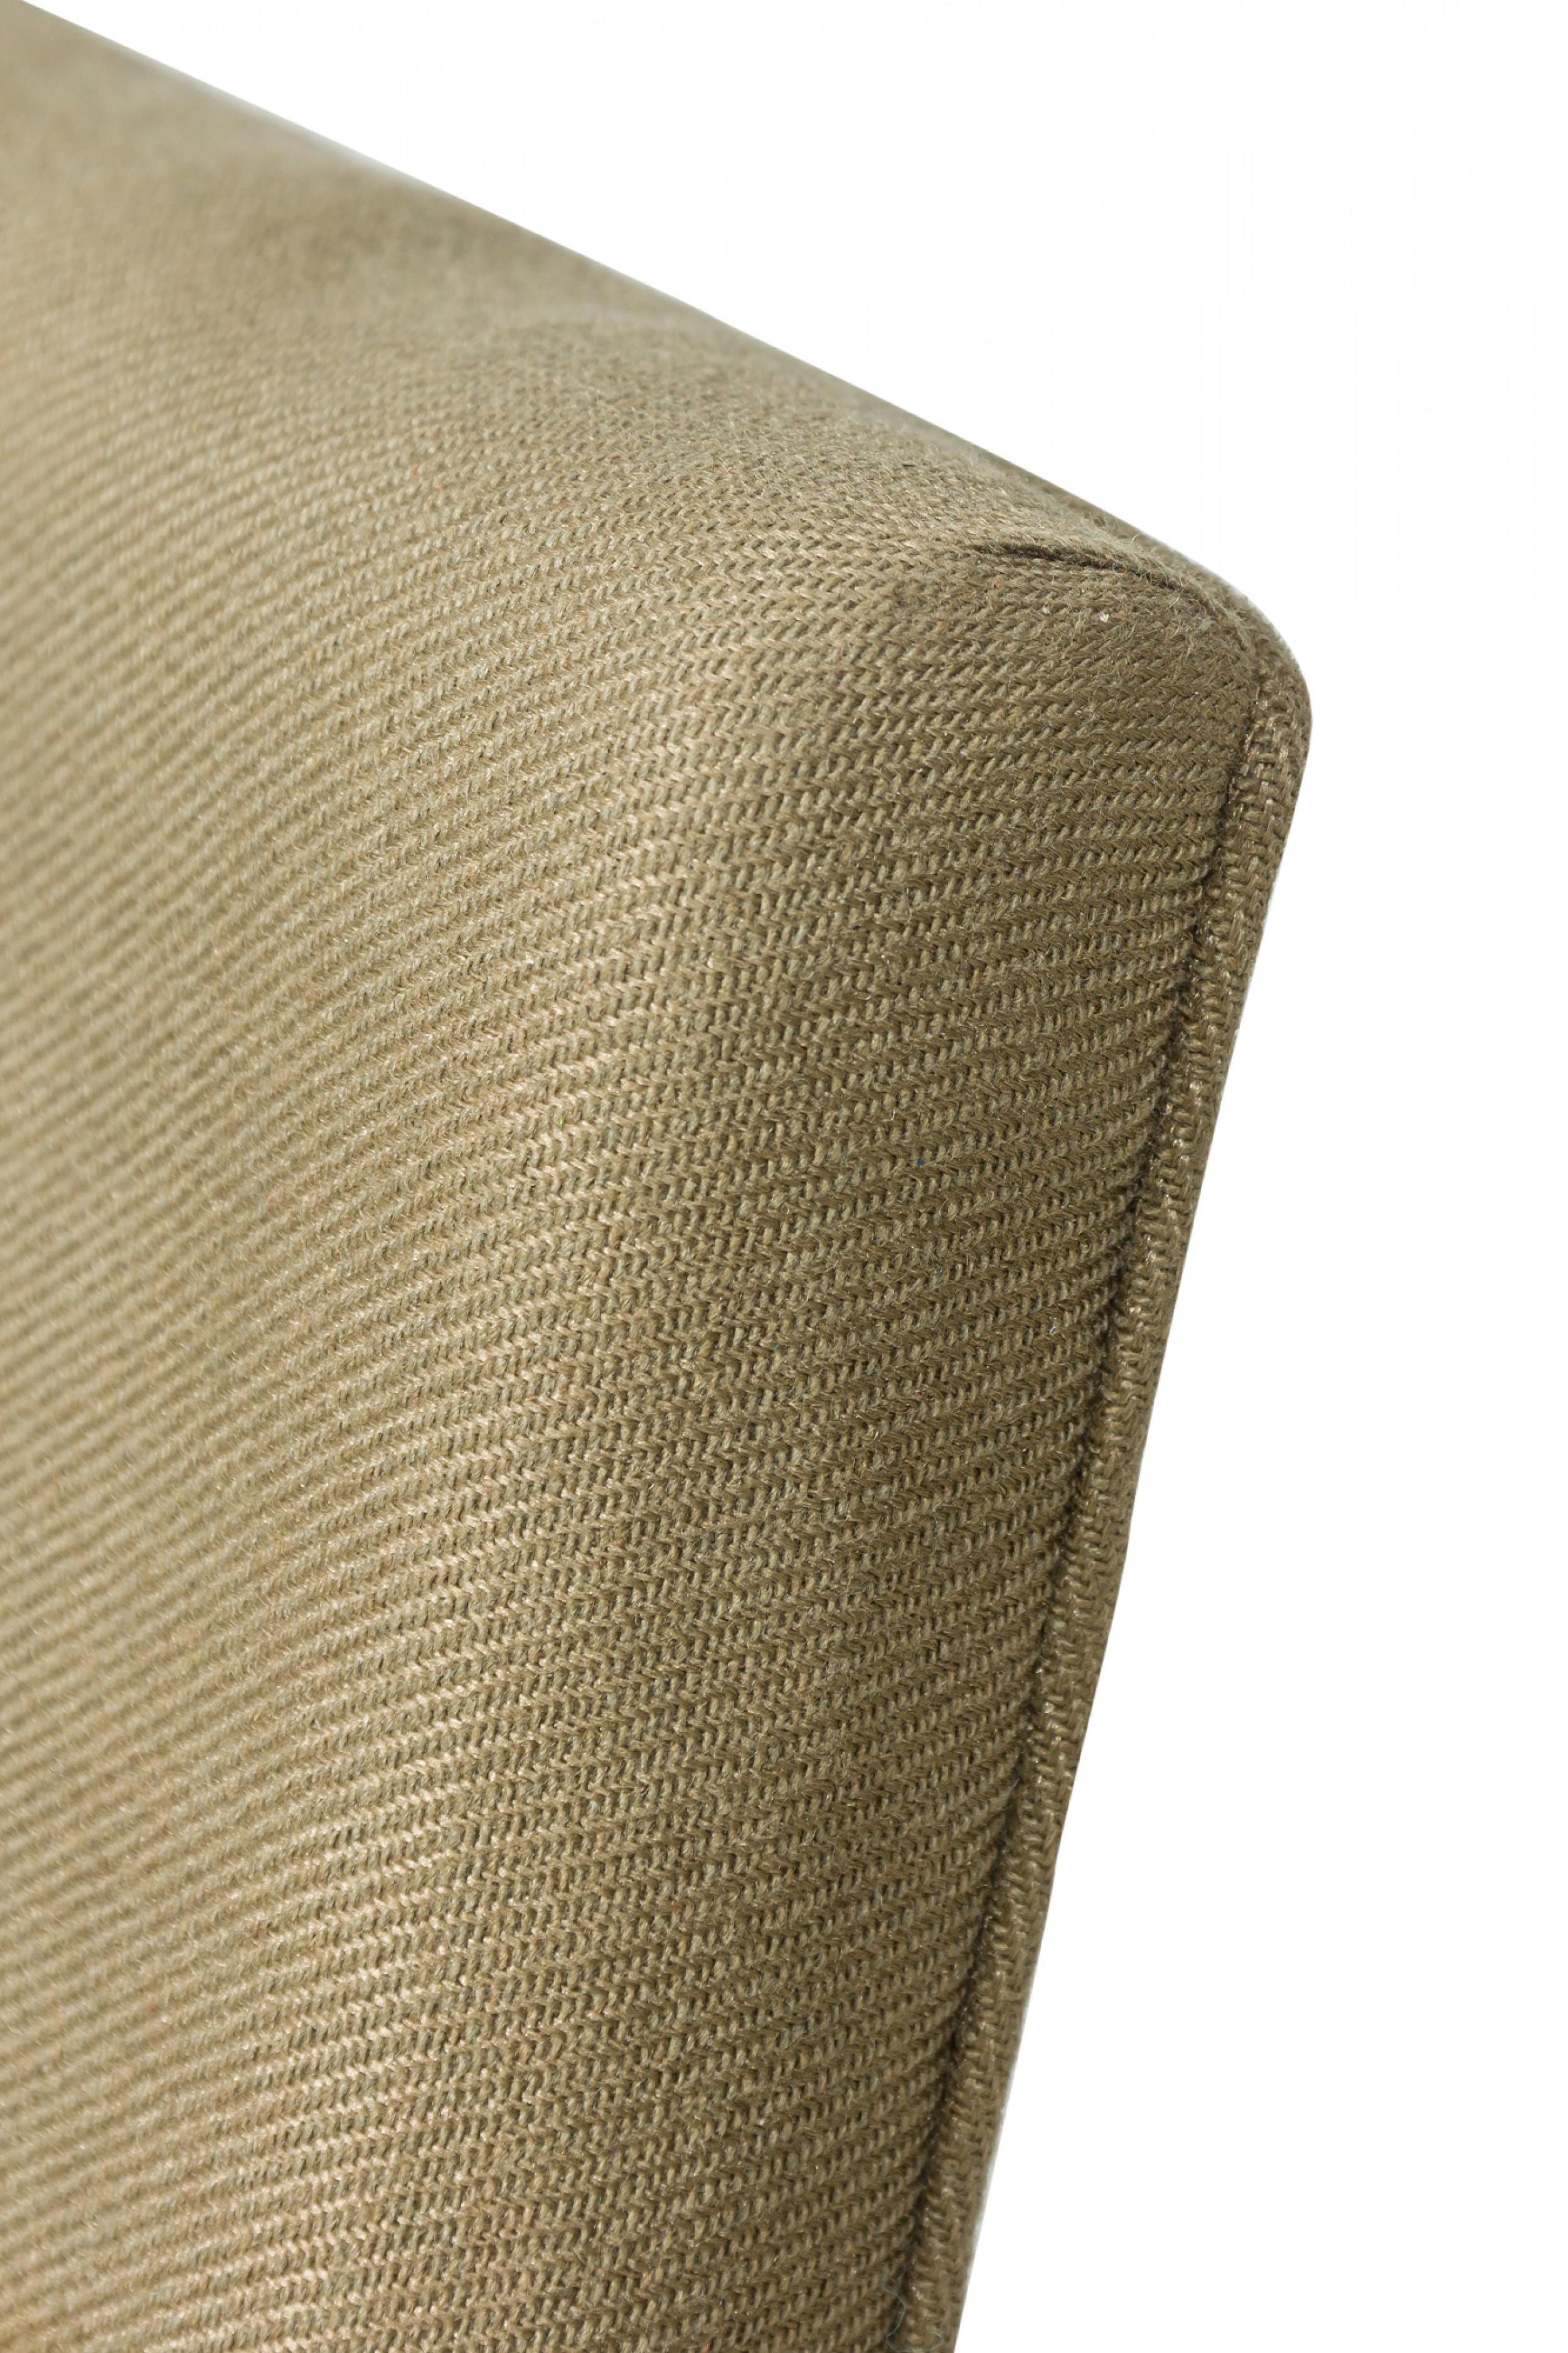 Amerikanischer Mid-Century-Loungesessel mit poliertem Chrom-Flachstangengestell, gepolstert mit einem leicht strukturierten beige/taupefarbenen Stoff. (MILO BAUGHMAN)(Ähnlicher Stuhl in lila Polsterung: REG5102B)
 

 Abnutzung und Verfärbung der